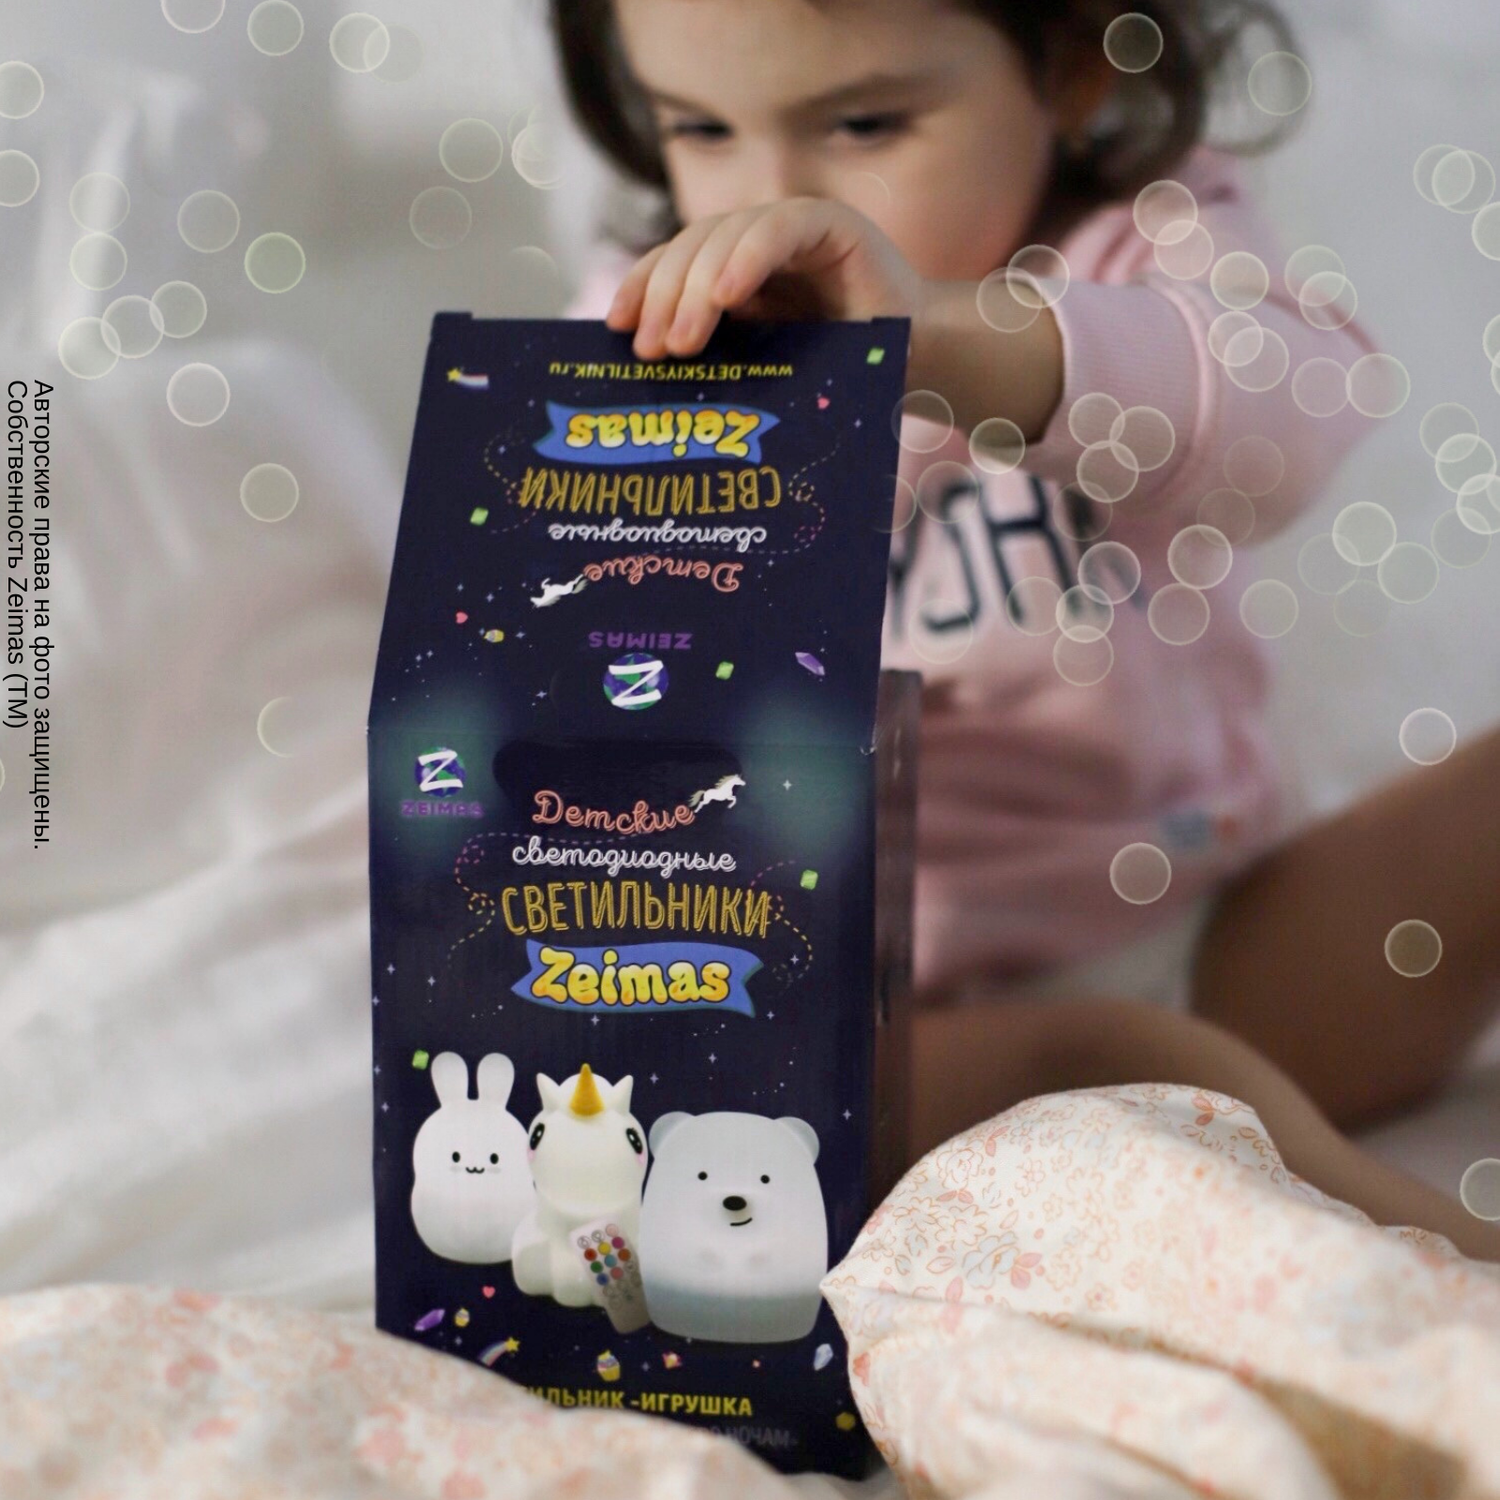 Ночник детский силиконовый Zeimas светильник игрушка Слон с пультом 9 цветов большой размер - фото 16